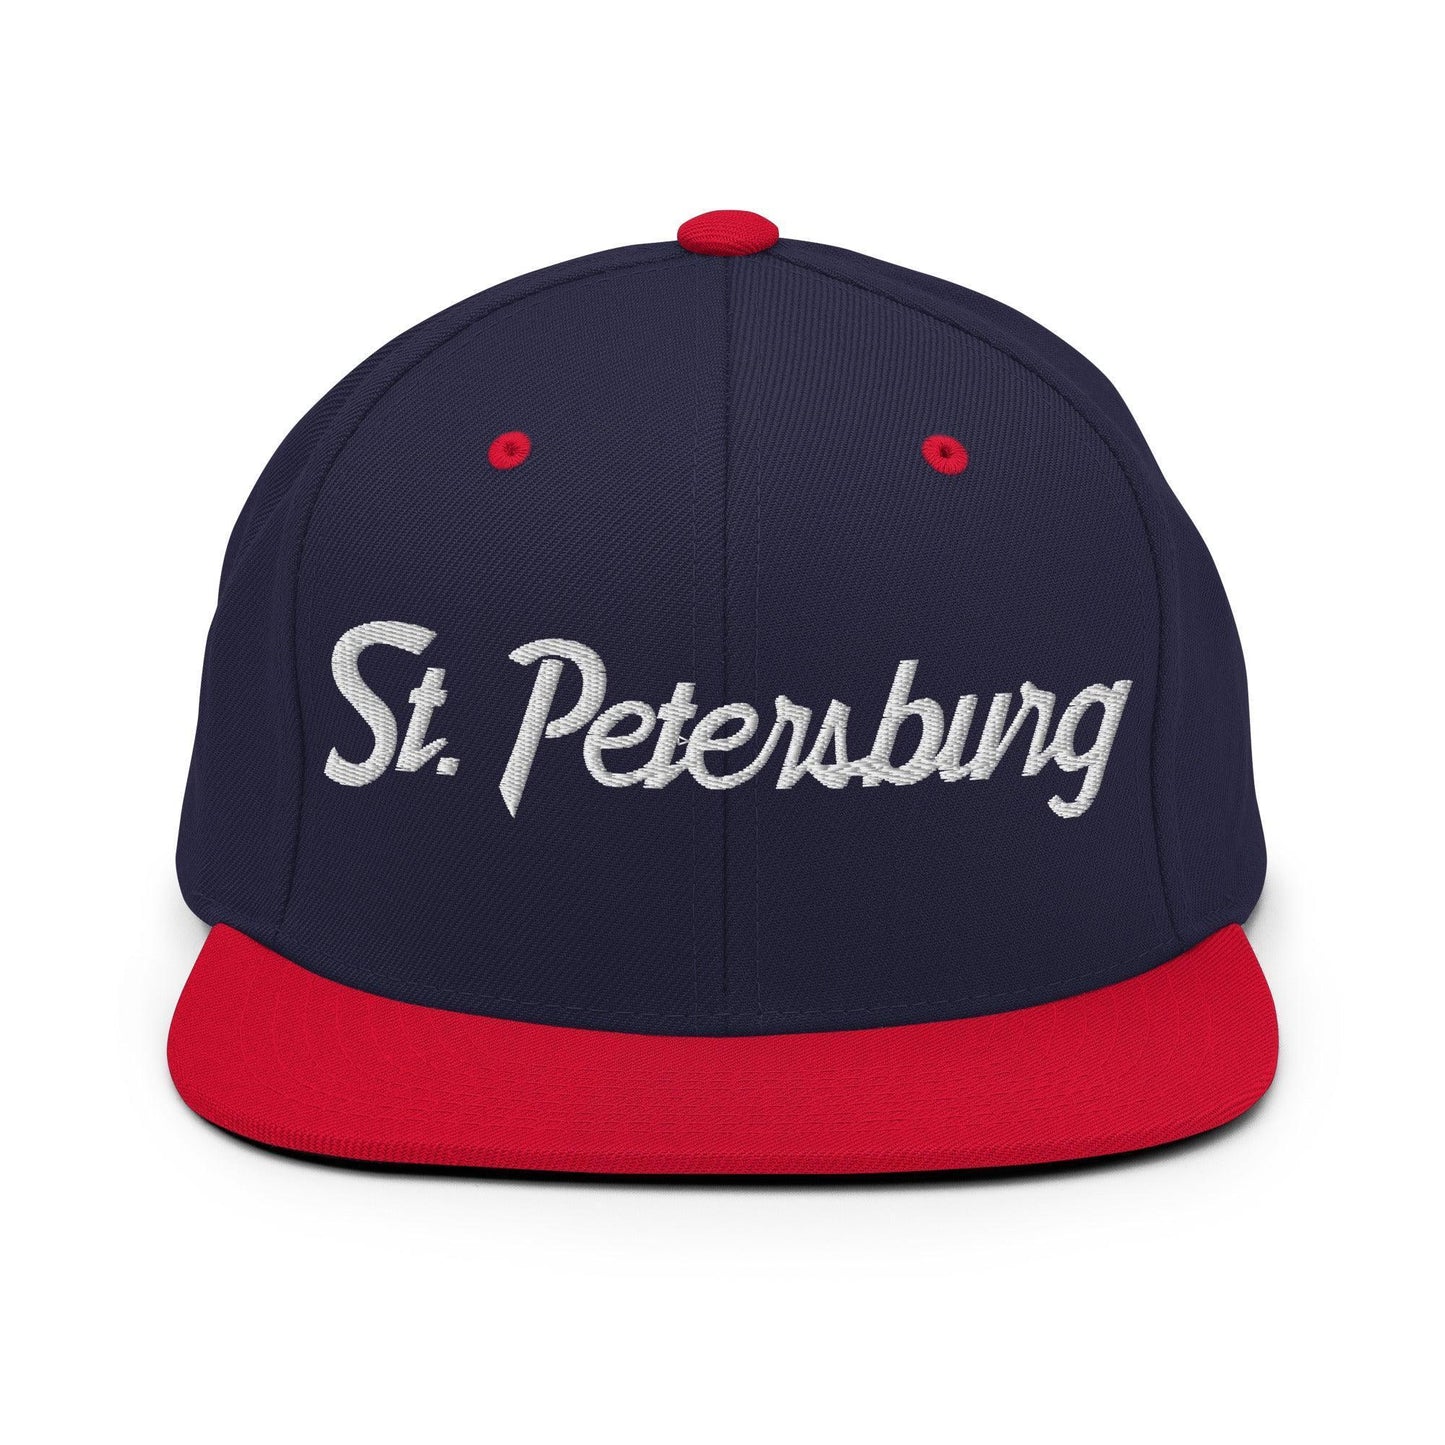 St. Petersburg Script Snapback Hat Navy Red